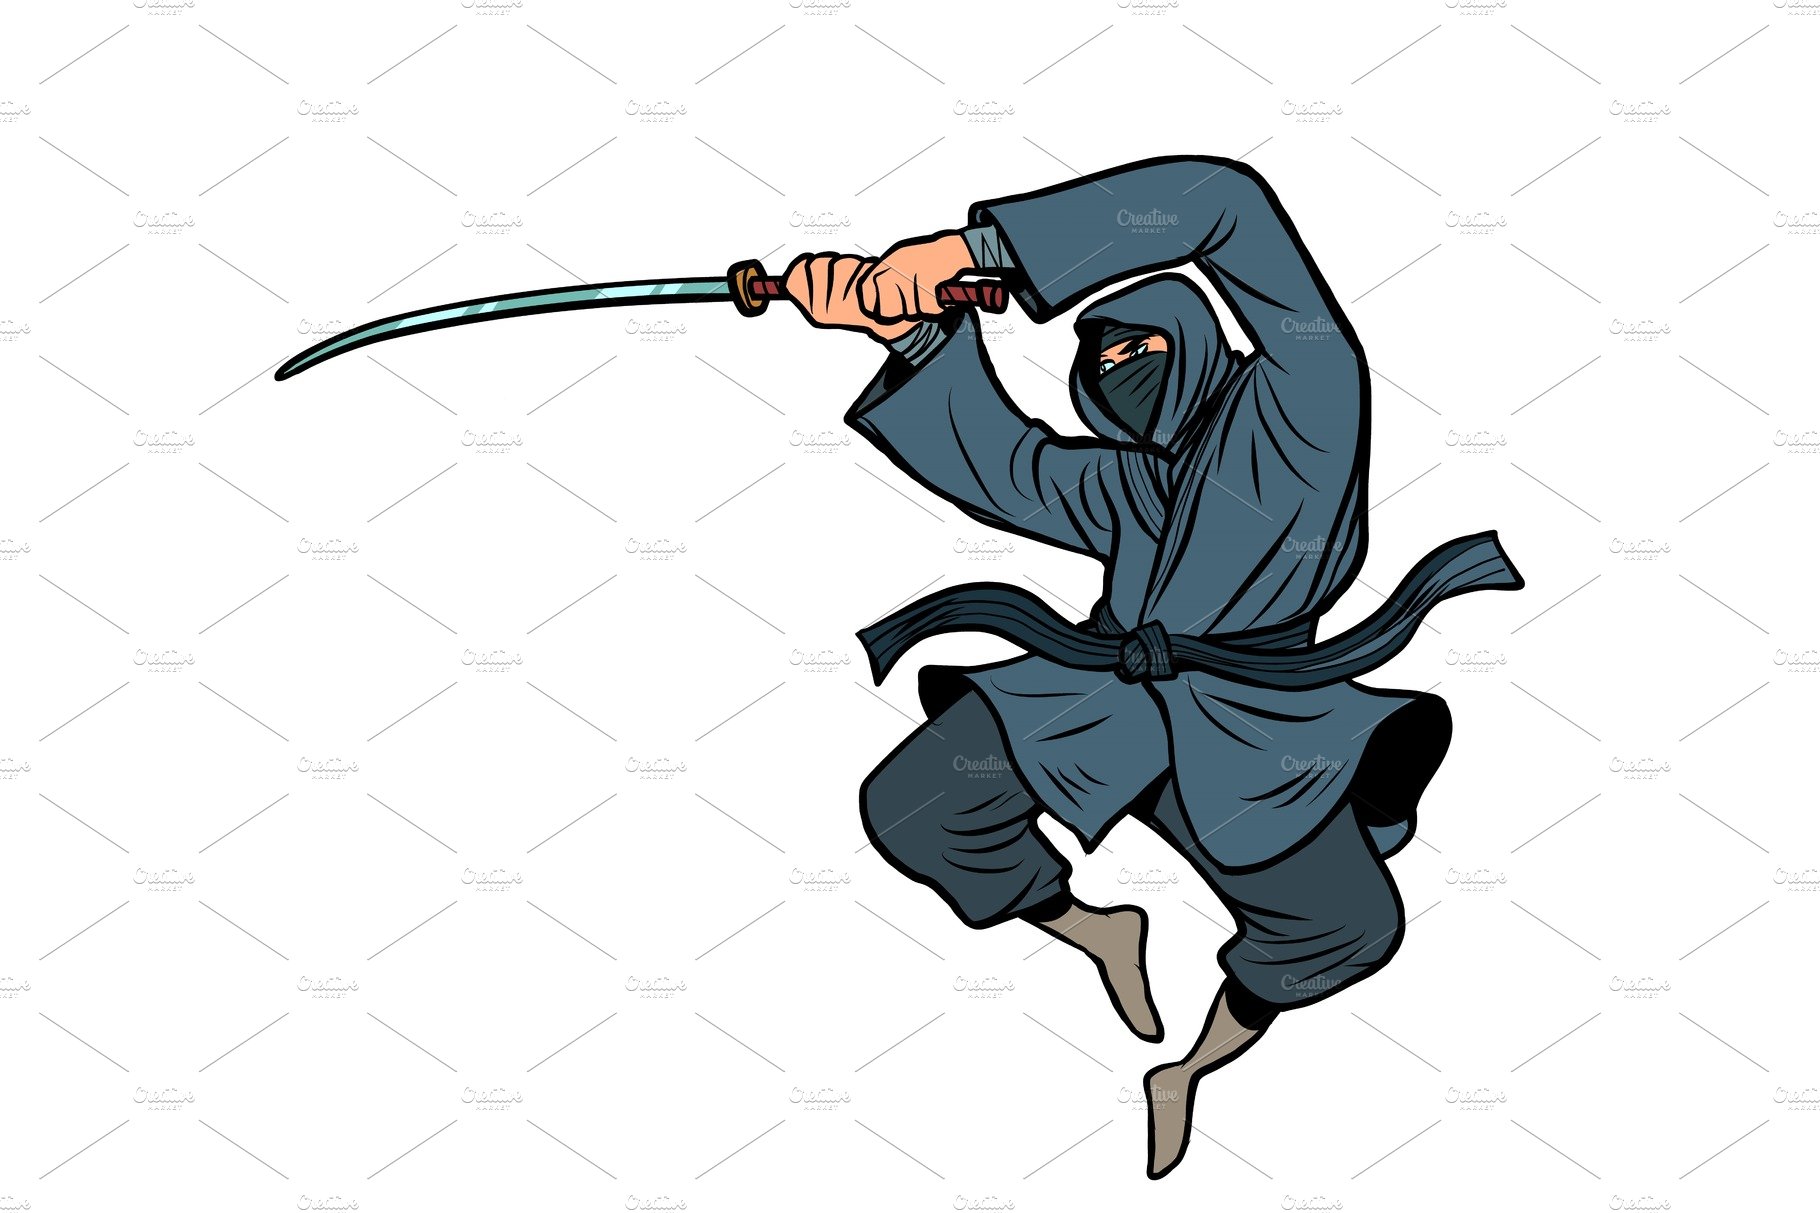 ninja with a katana sword cover image.